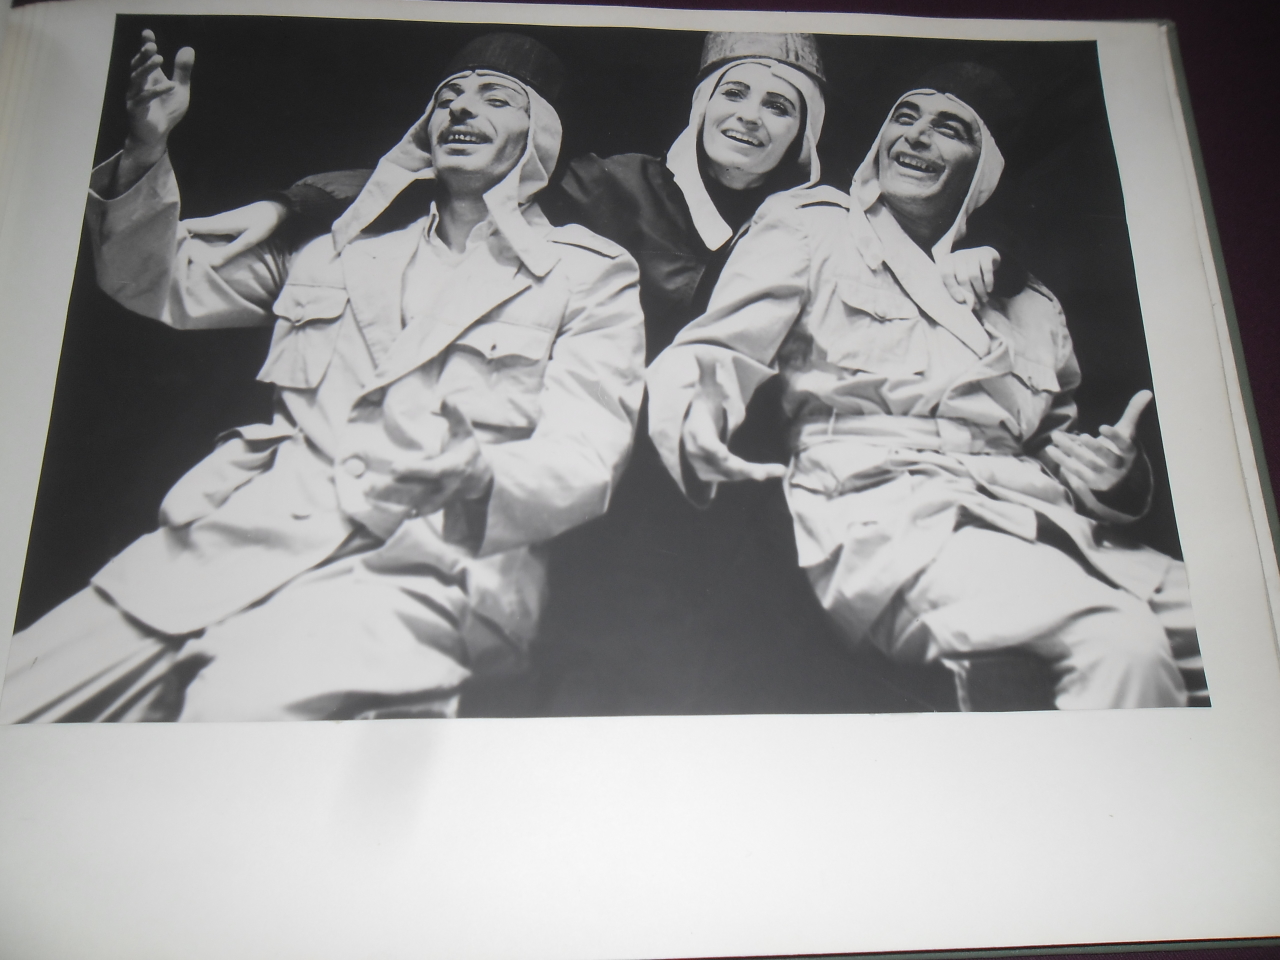  Լուսանկար՝  Վրույր Սեդրակի Առաքելյան (Արտիստ)  և ուրիշ   արտիստներ ներկայացման պահին